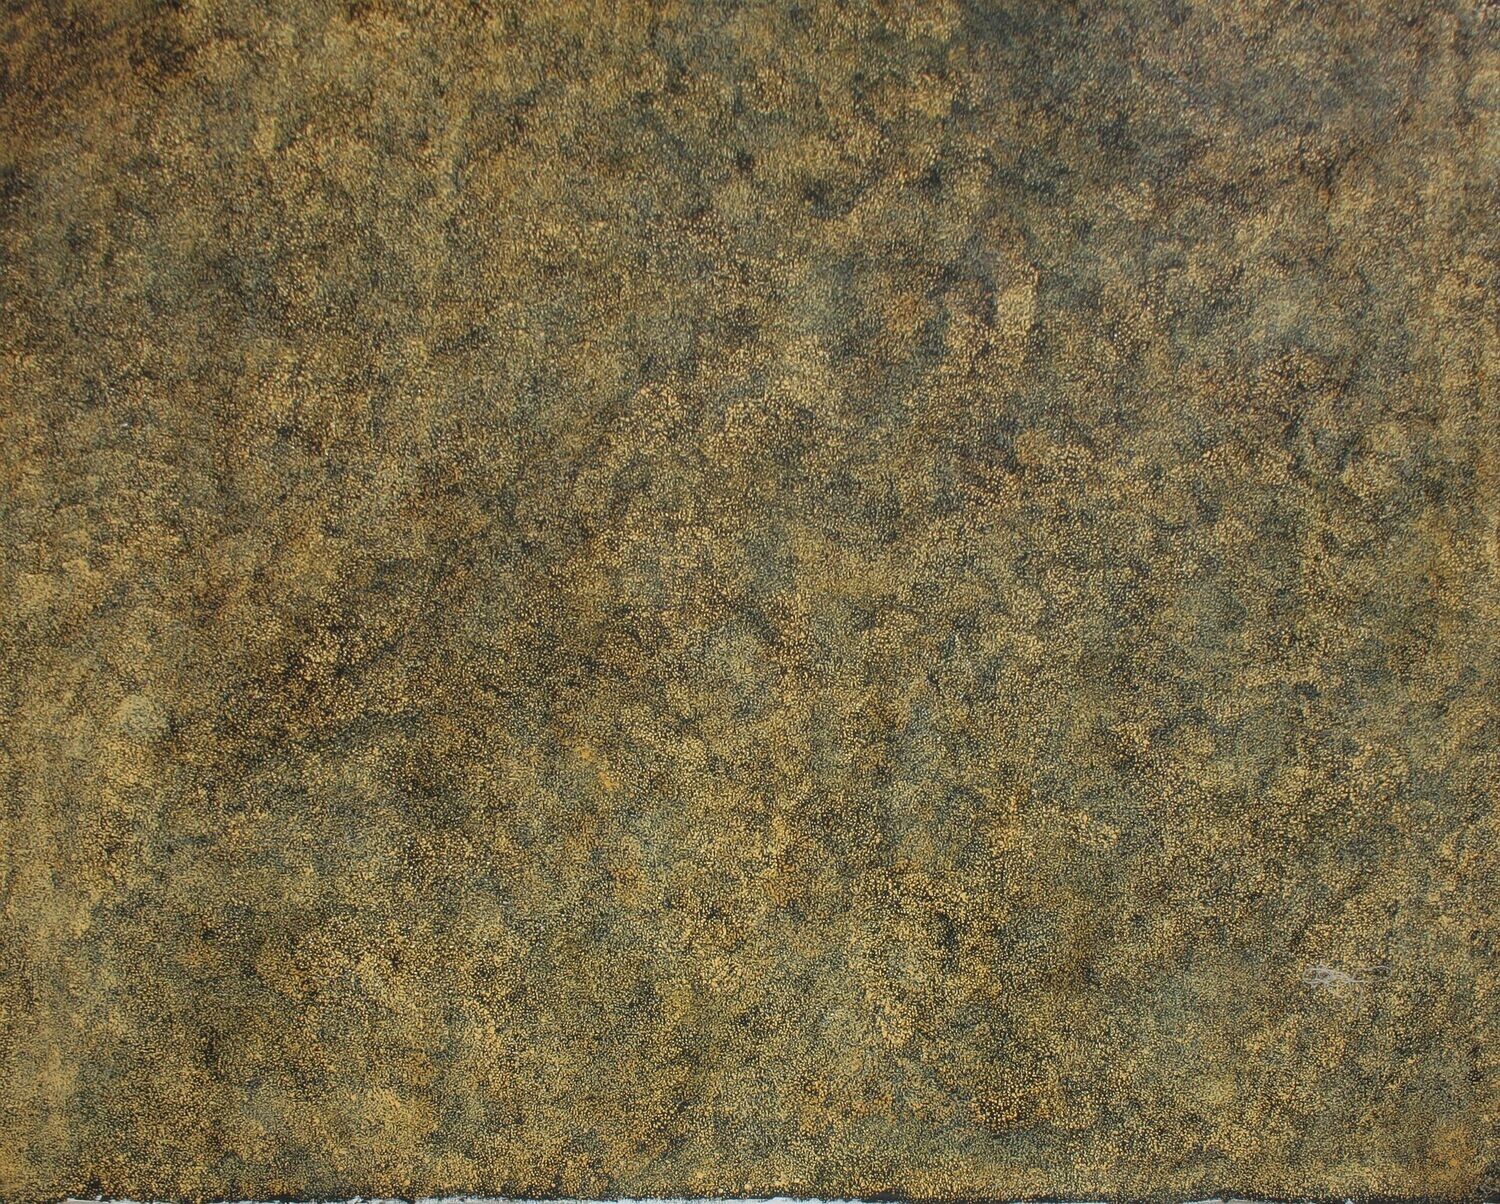 Amwekety (Bush Plum), 2001 by Gracie Pwerle Morton, 152x122cm, Cat 6186GM